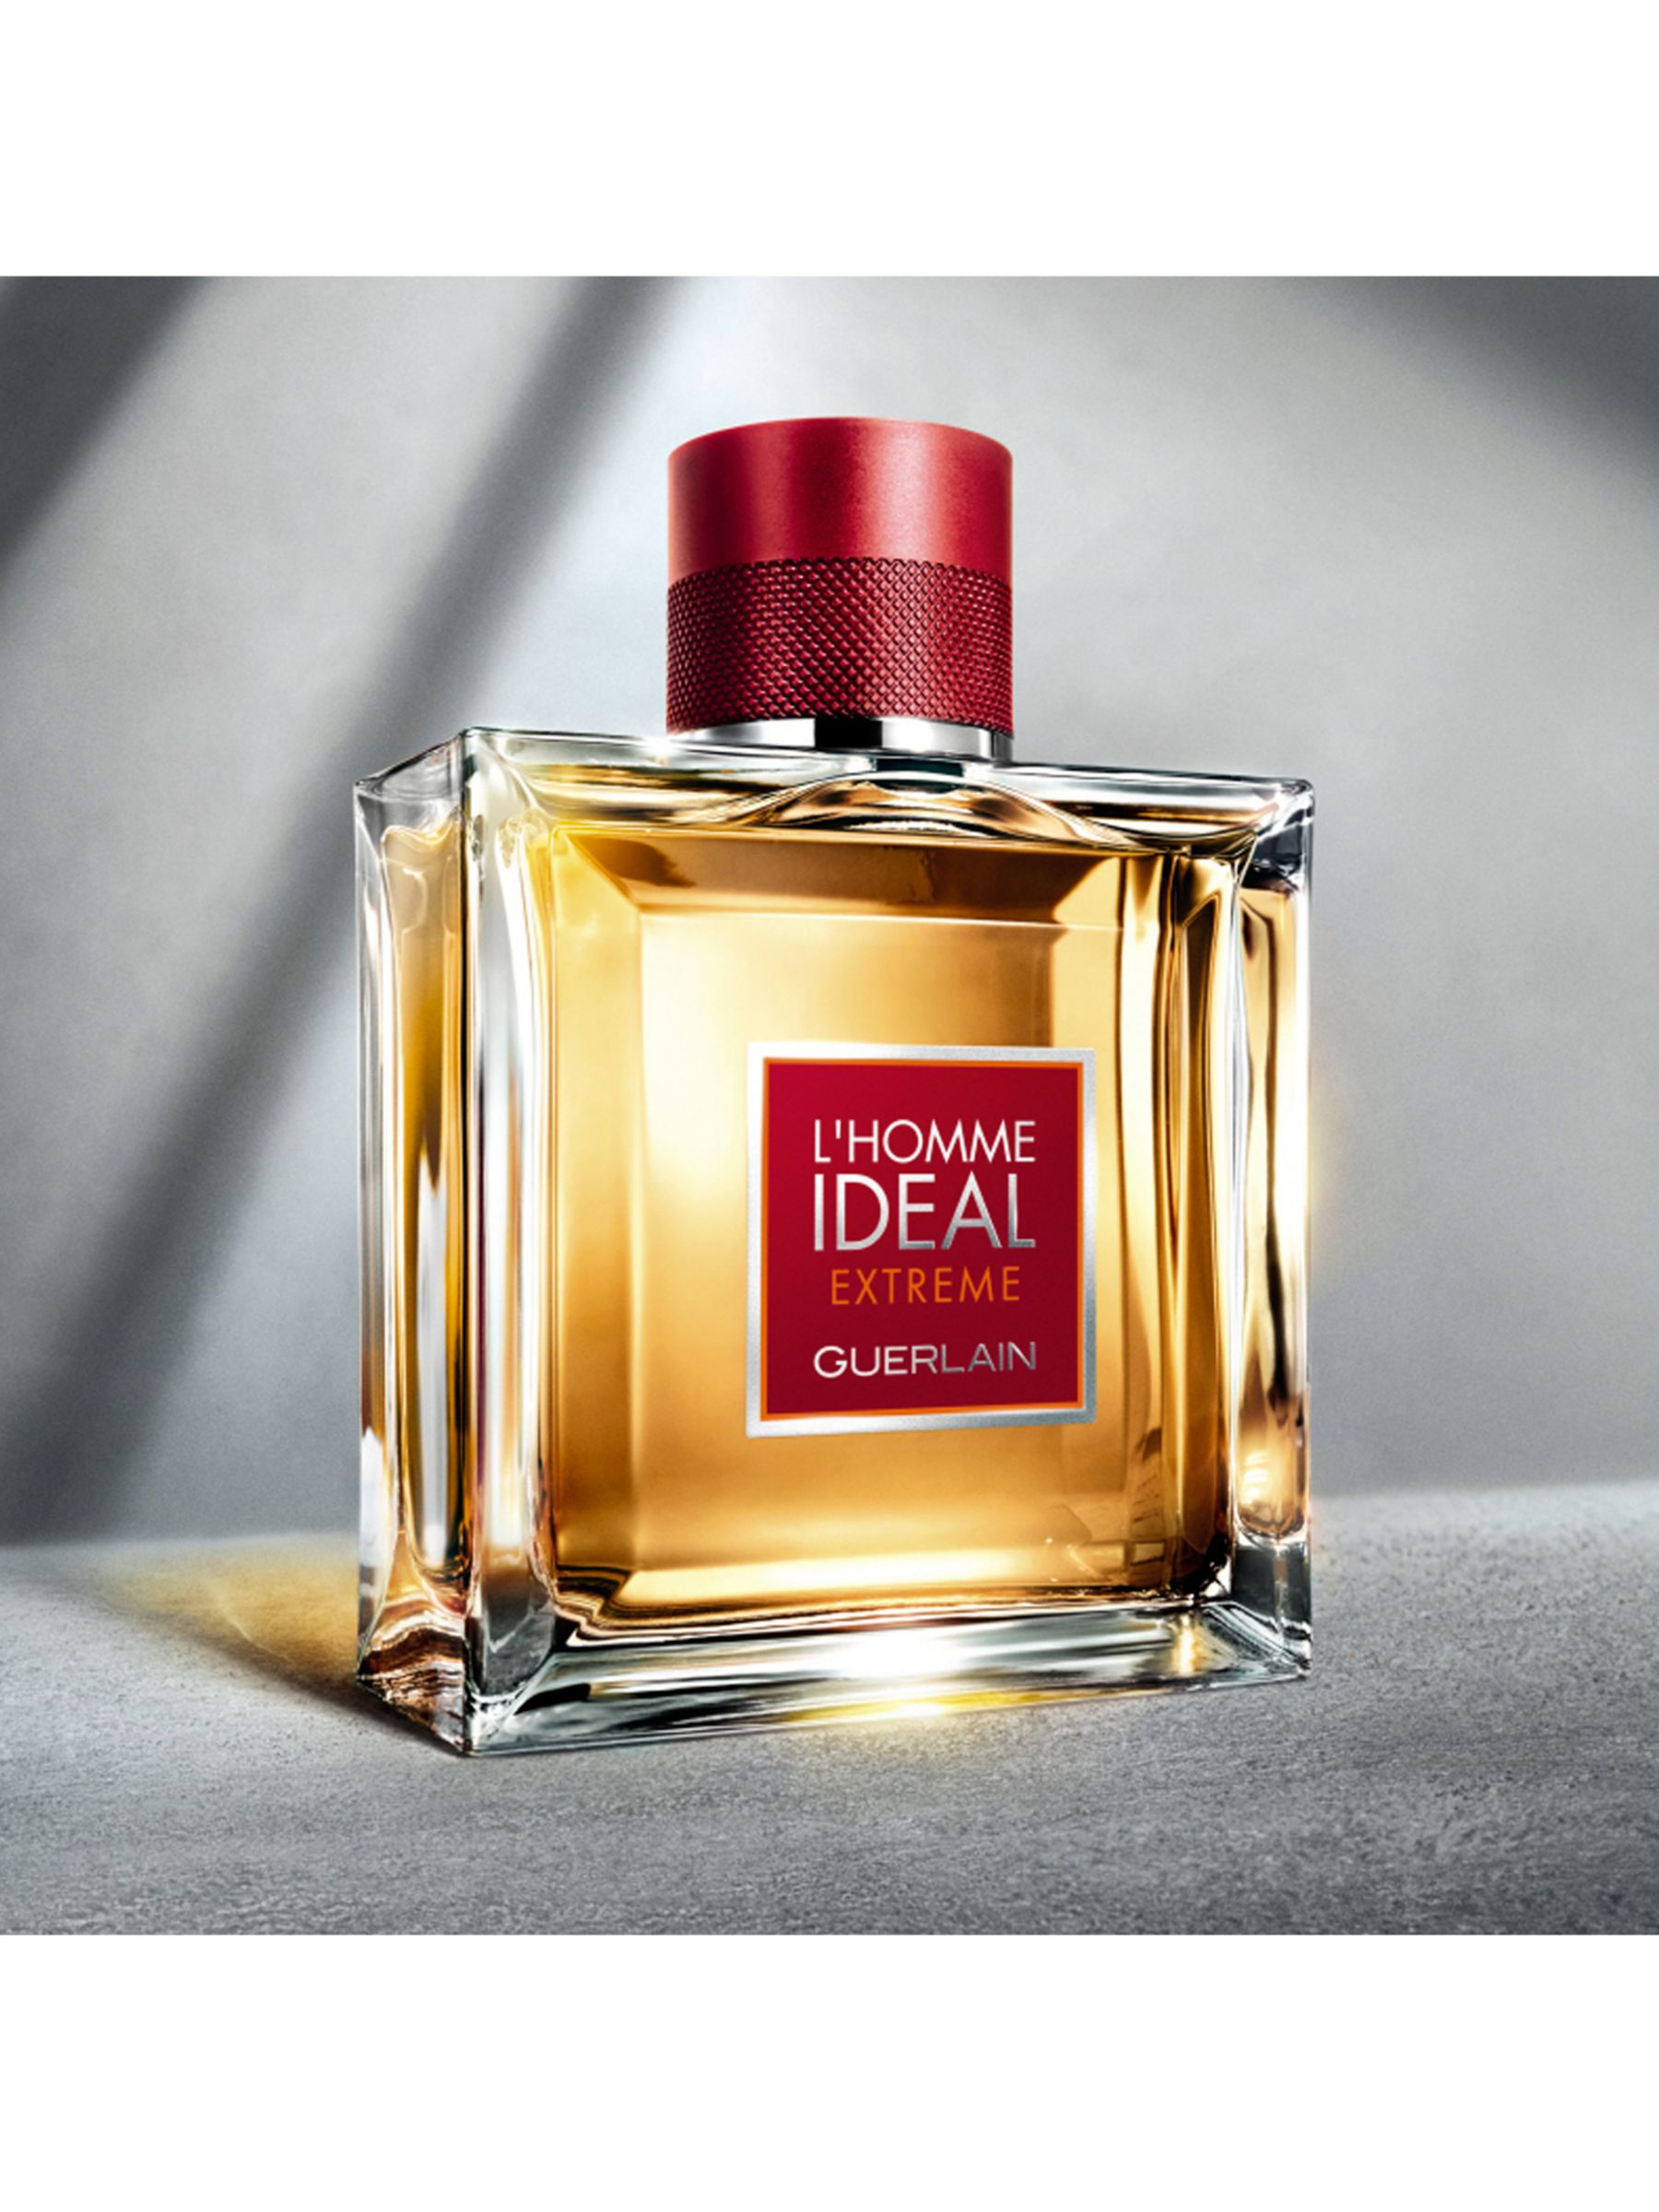 Guerlain L'Homme Idéal Extrême Eau de Parfum, 50ml at John Lewis & Partners